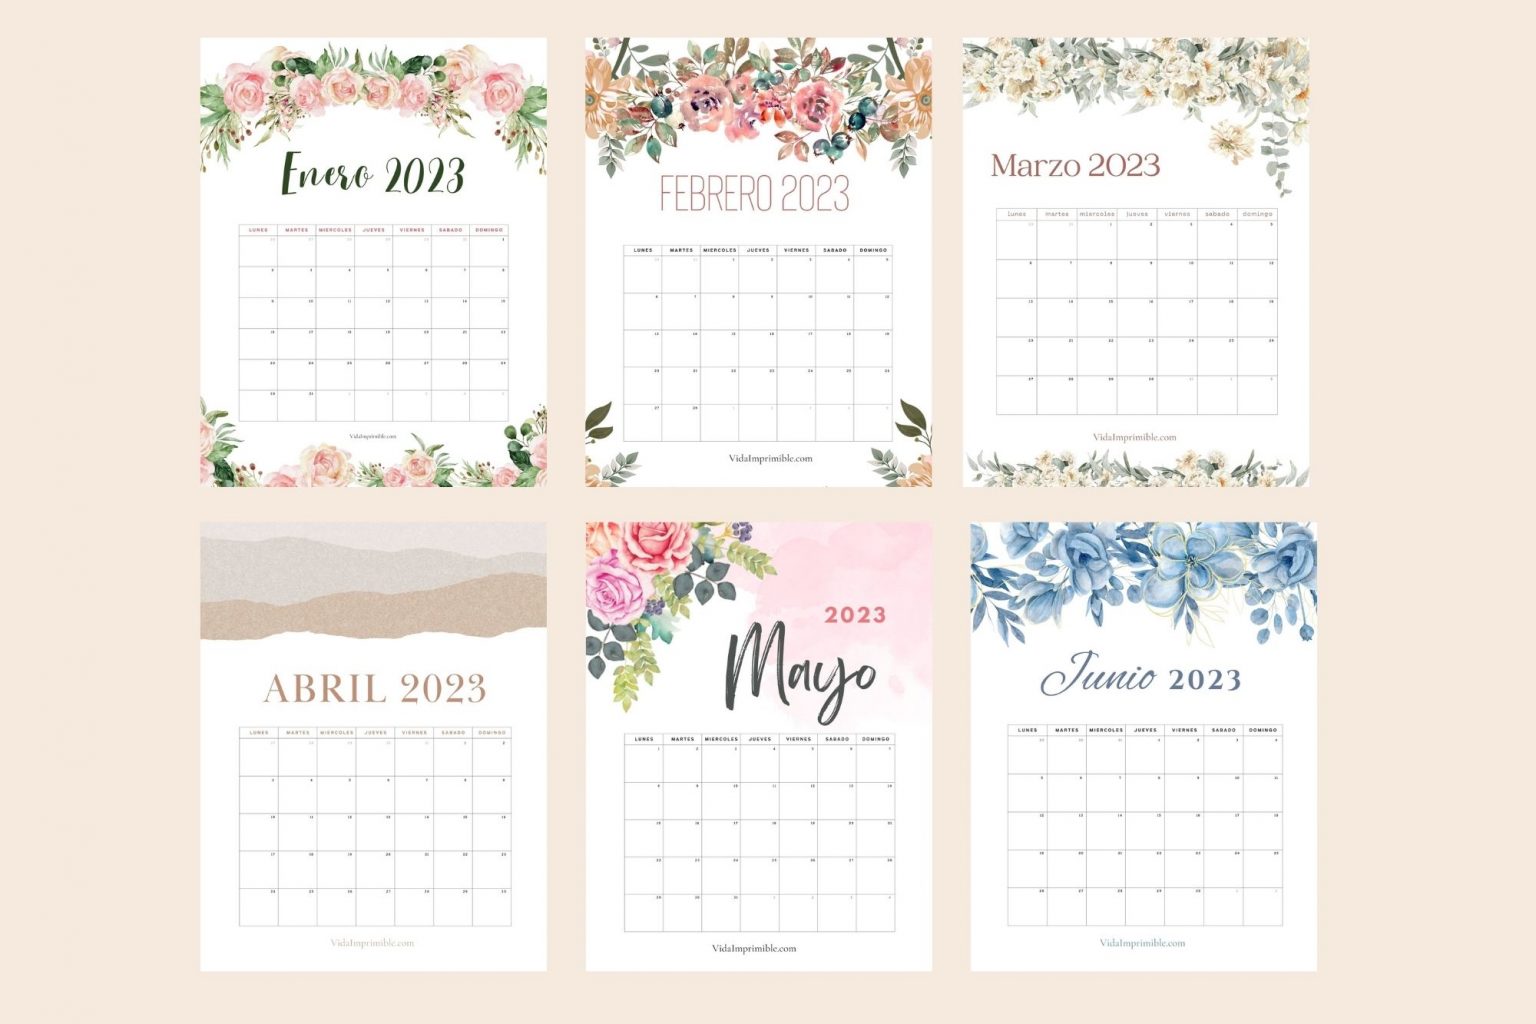 Calendarios 2023 Para Imprimir Y Escribir Calendario Gratis www.vrogue.co